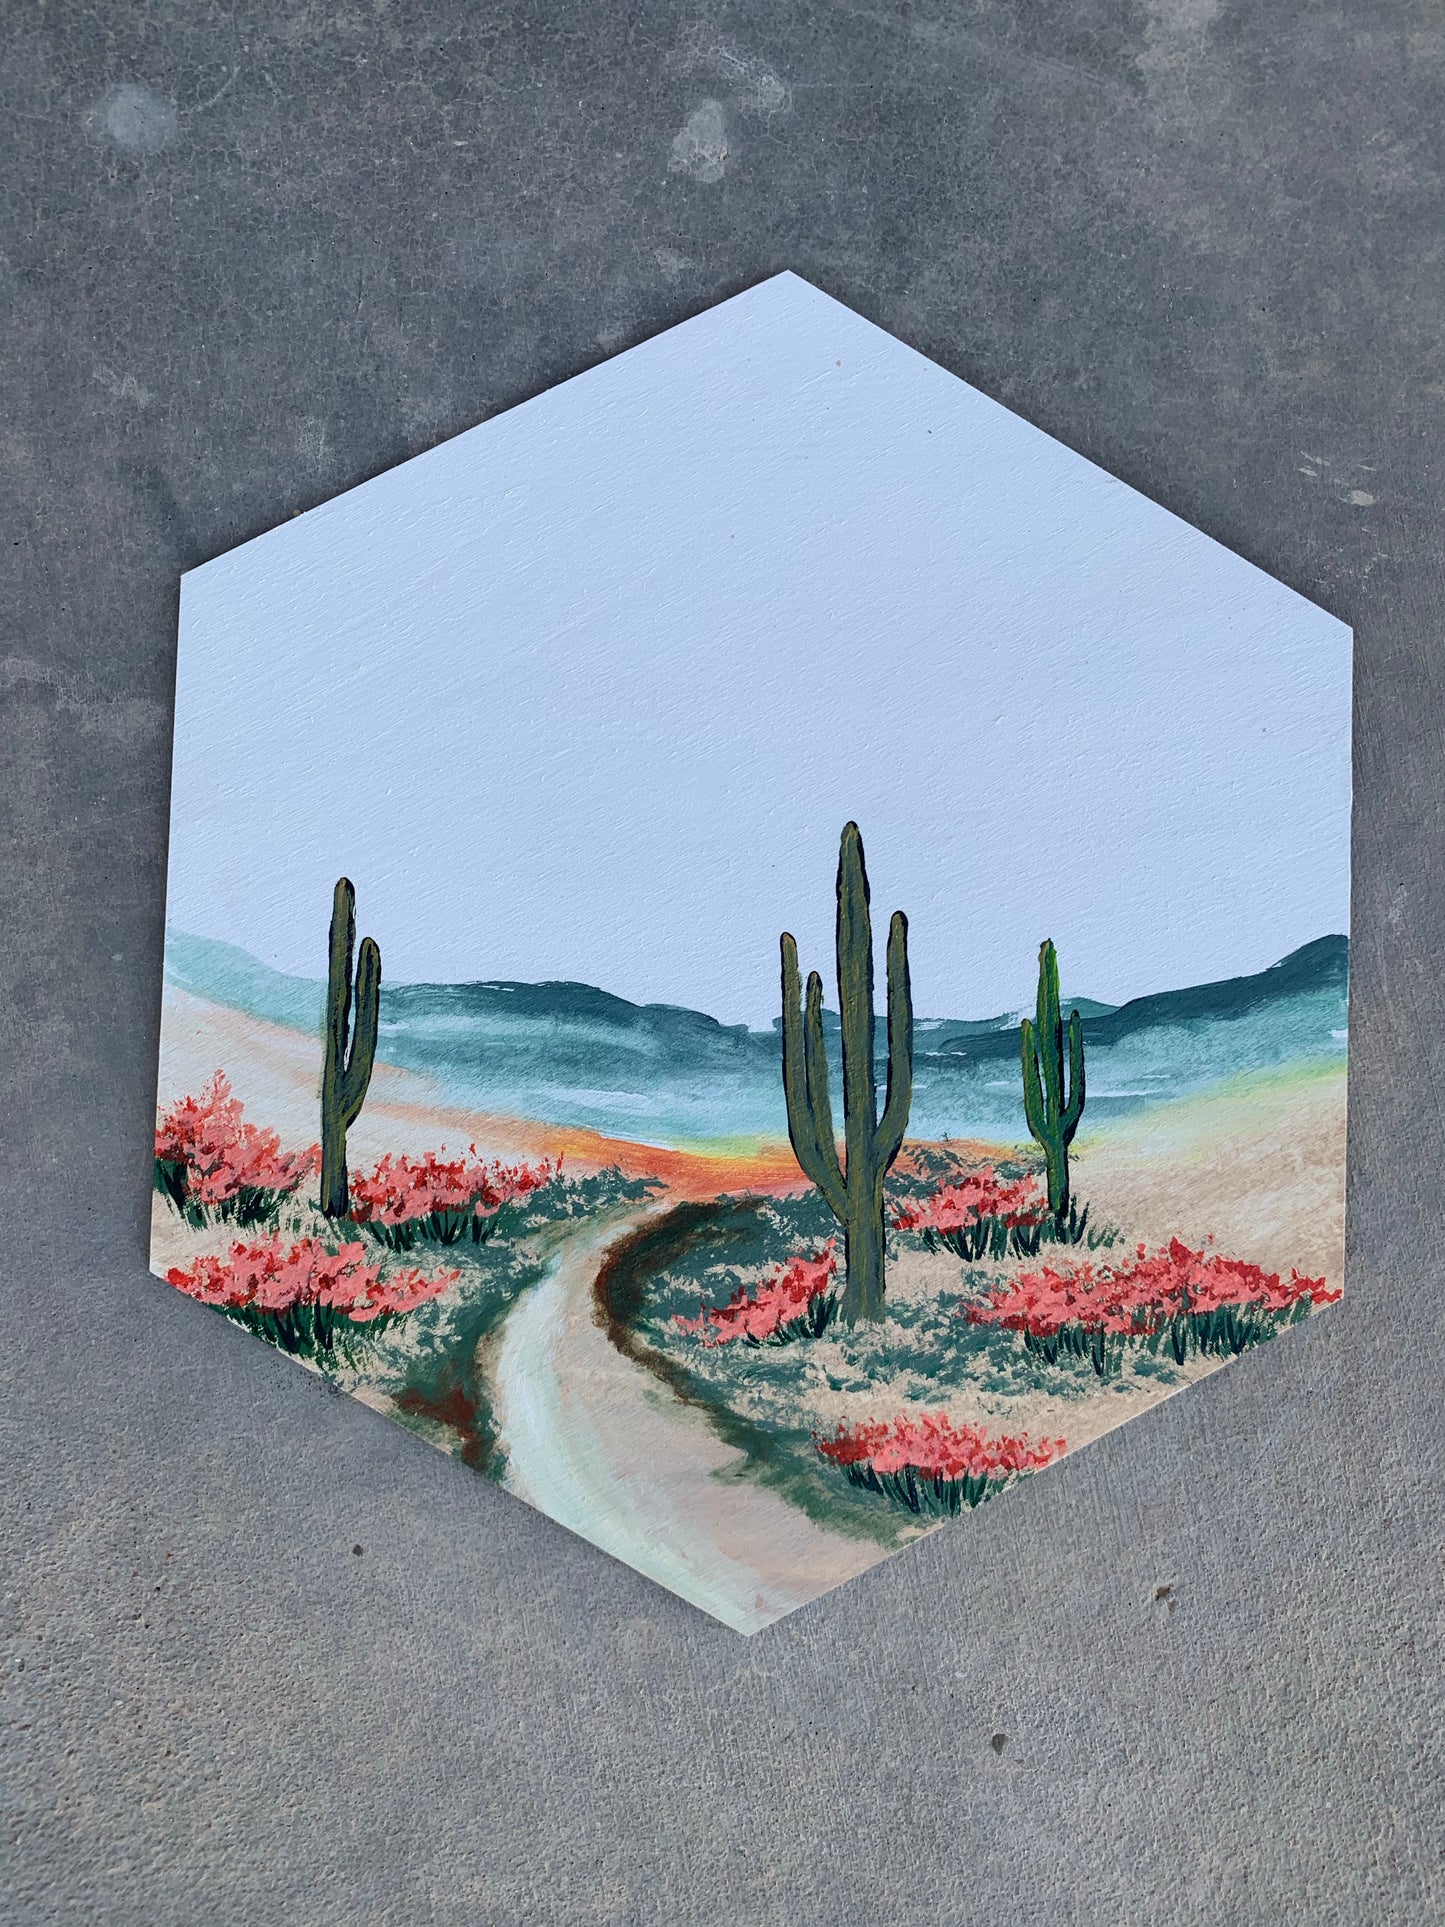 Desert hexagon saguaro cactus pastel wood cutout painting